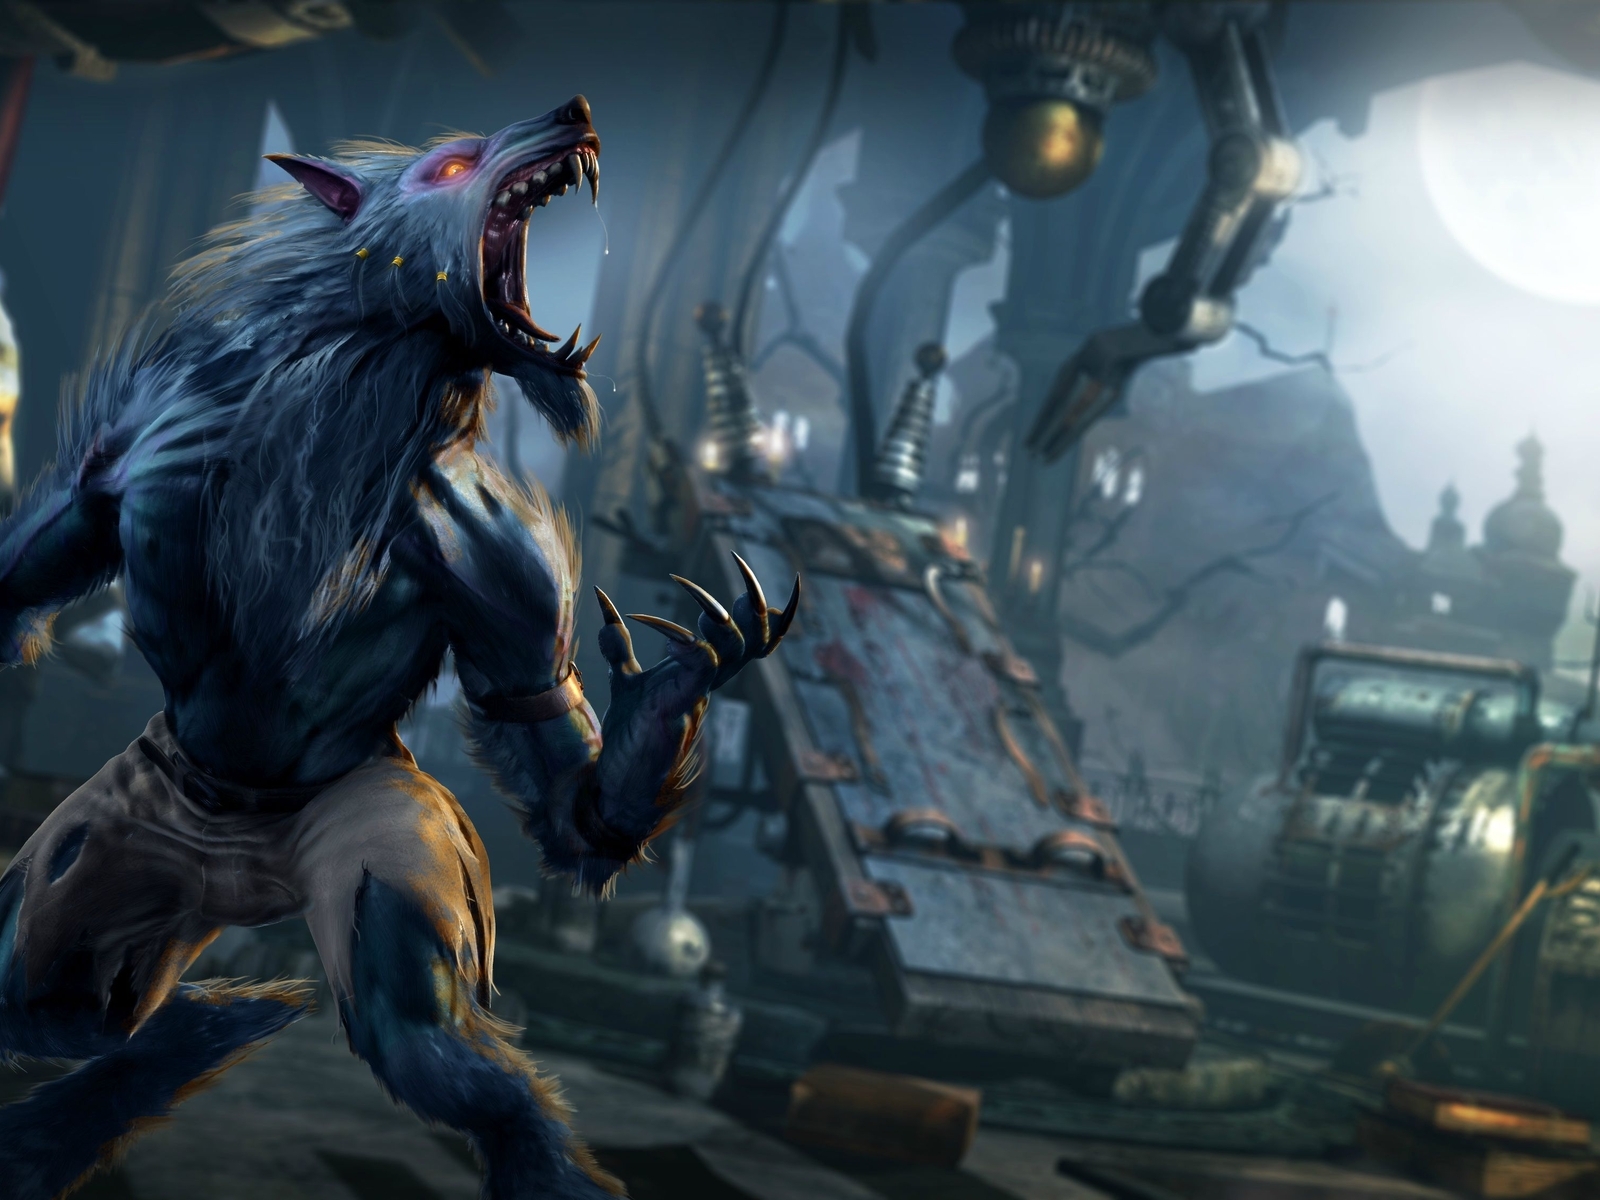 Image: Killer Instinct, wolf, werewolf, claws, jaws, mechanisms